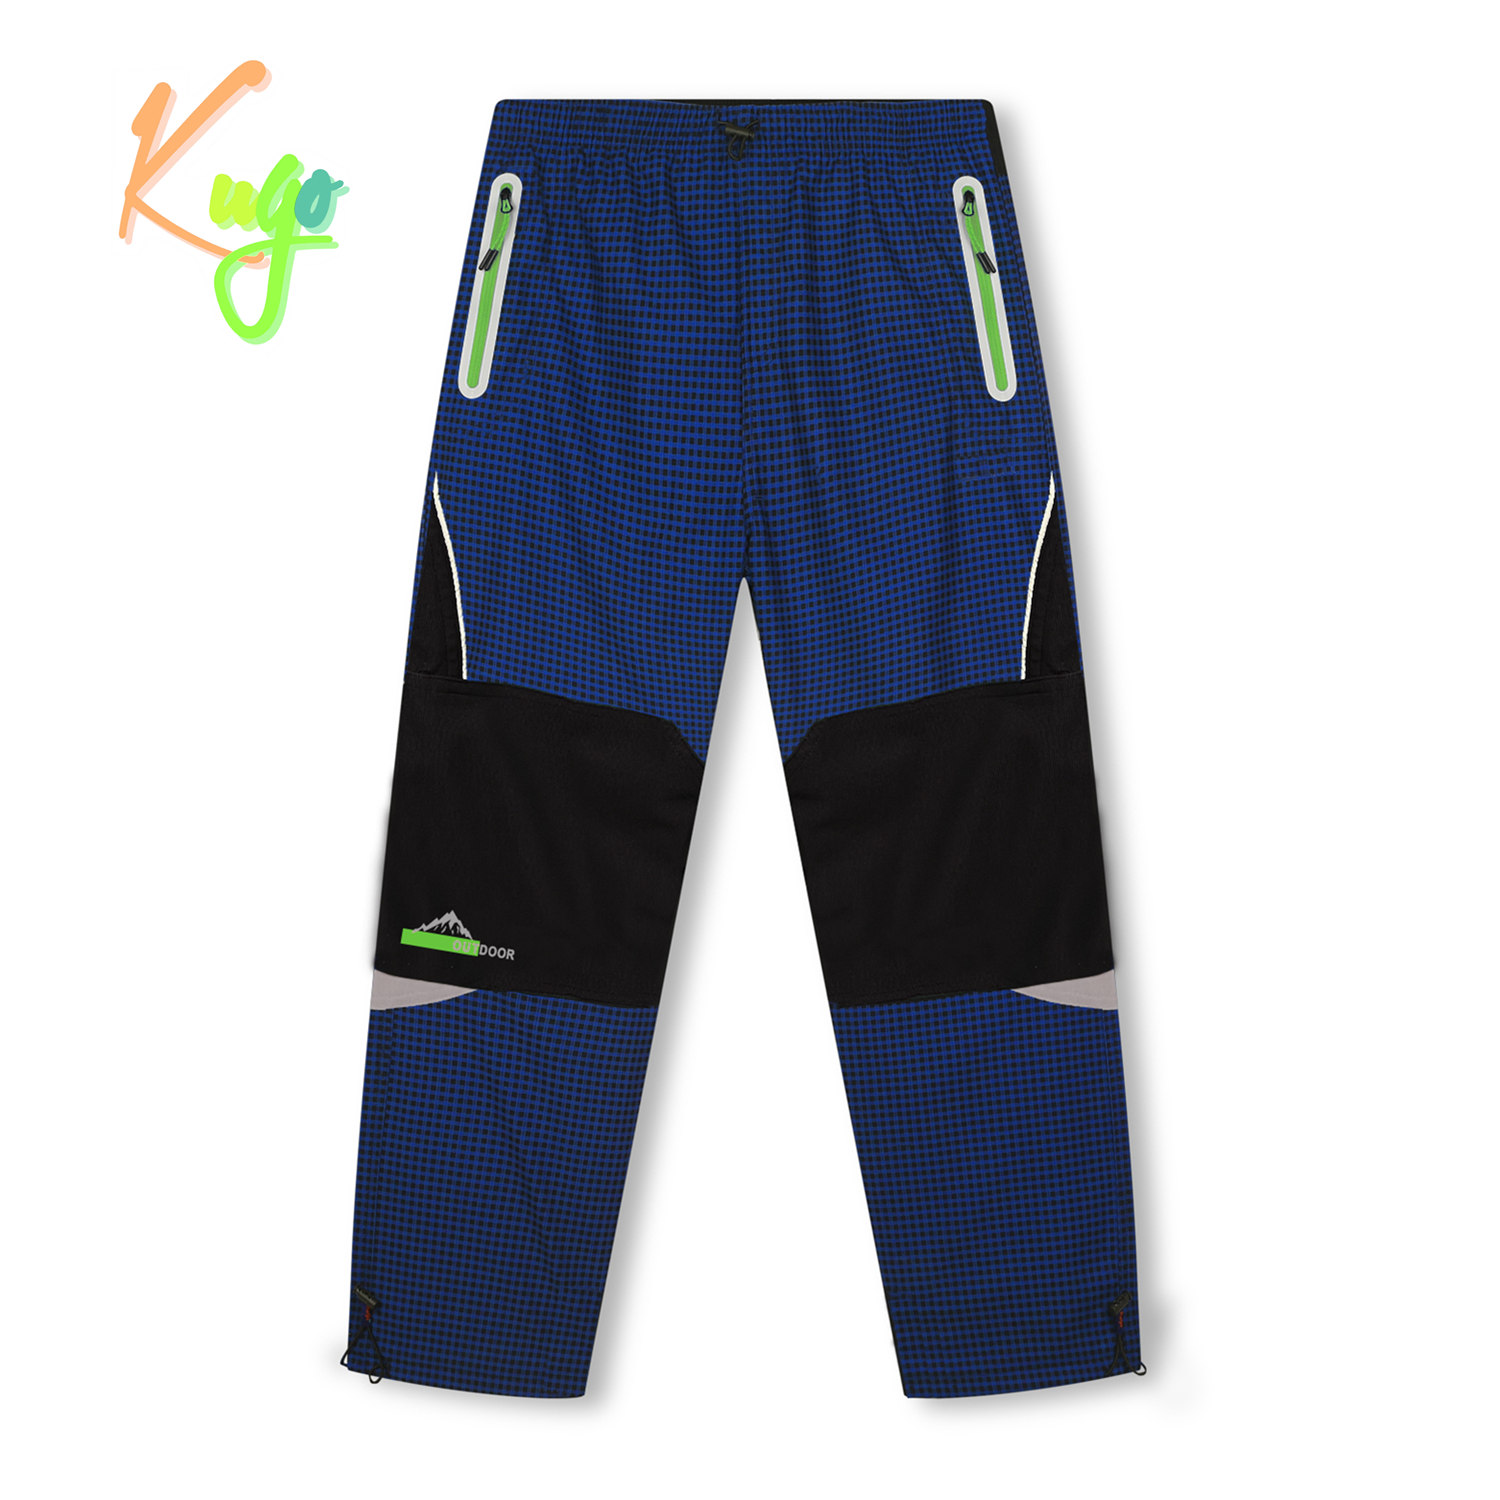 Chlapecké zateplené outdoorové kalhoty - KUGO C7772, modrá/ zelené zipy Barva: Modrá, Velikost: 146